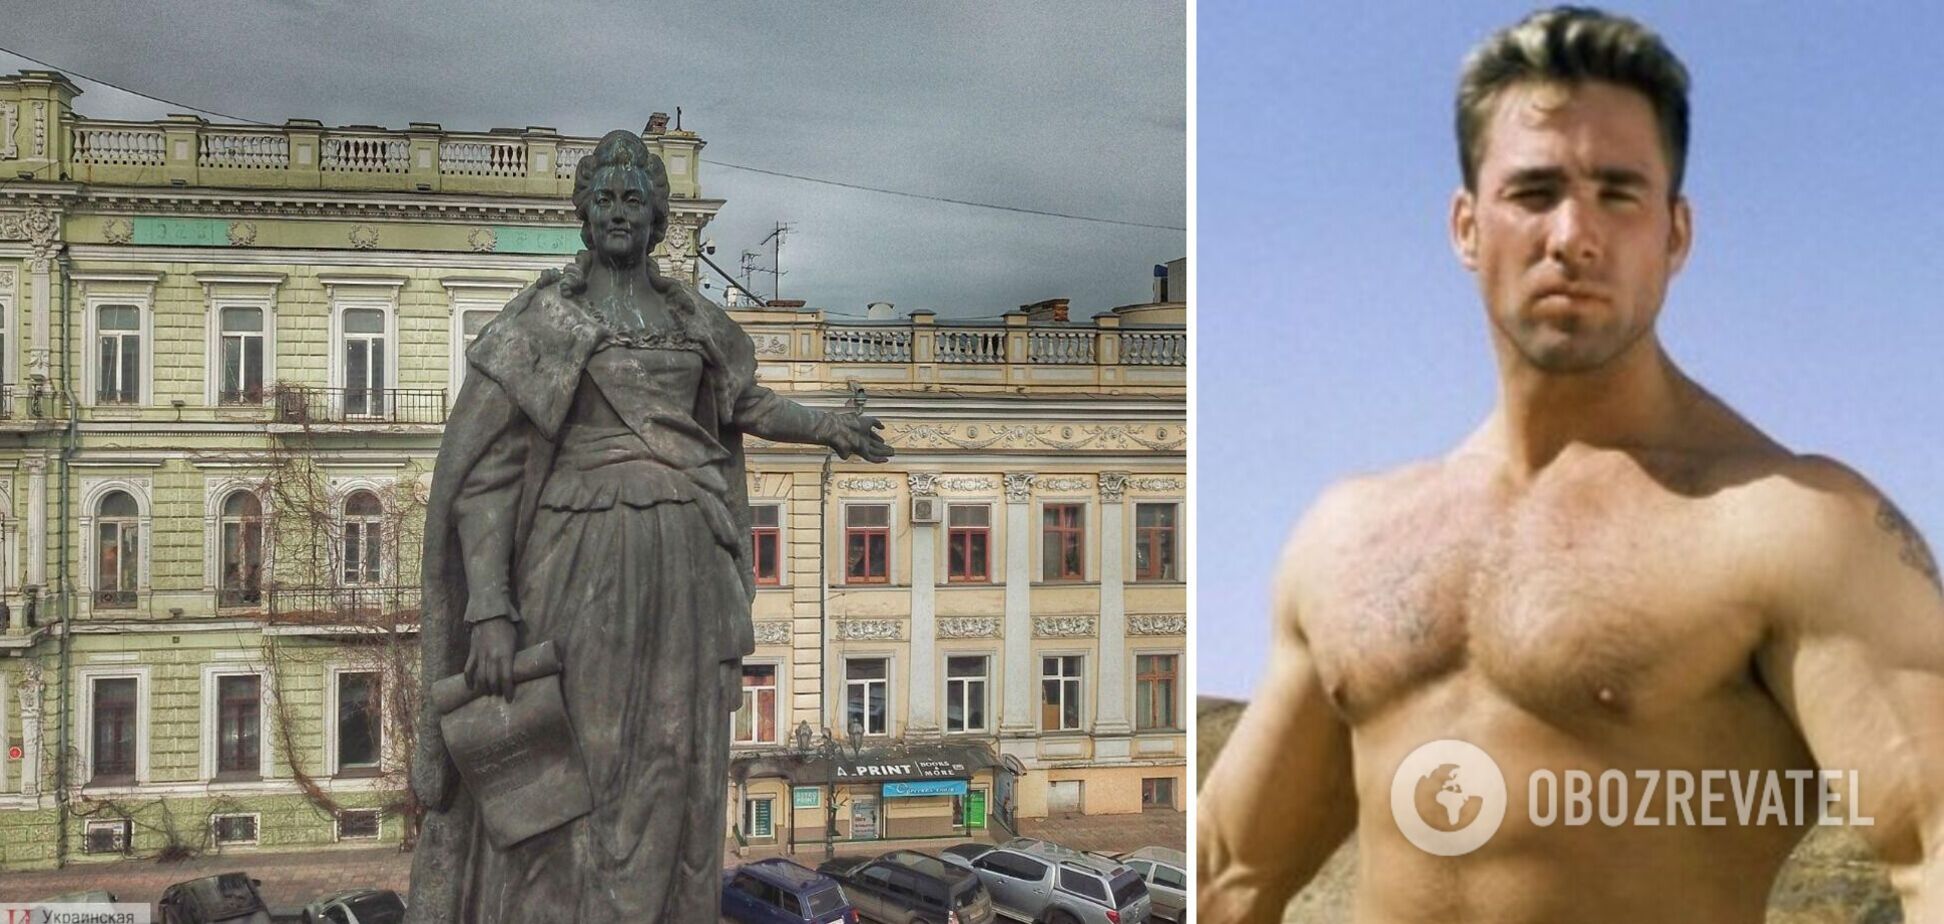 Петиція про заміну пам'ятника Катерині ІІ в Одесі на пам'ятник американському порноактору зібрала необхідні 25 тисяч підписів